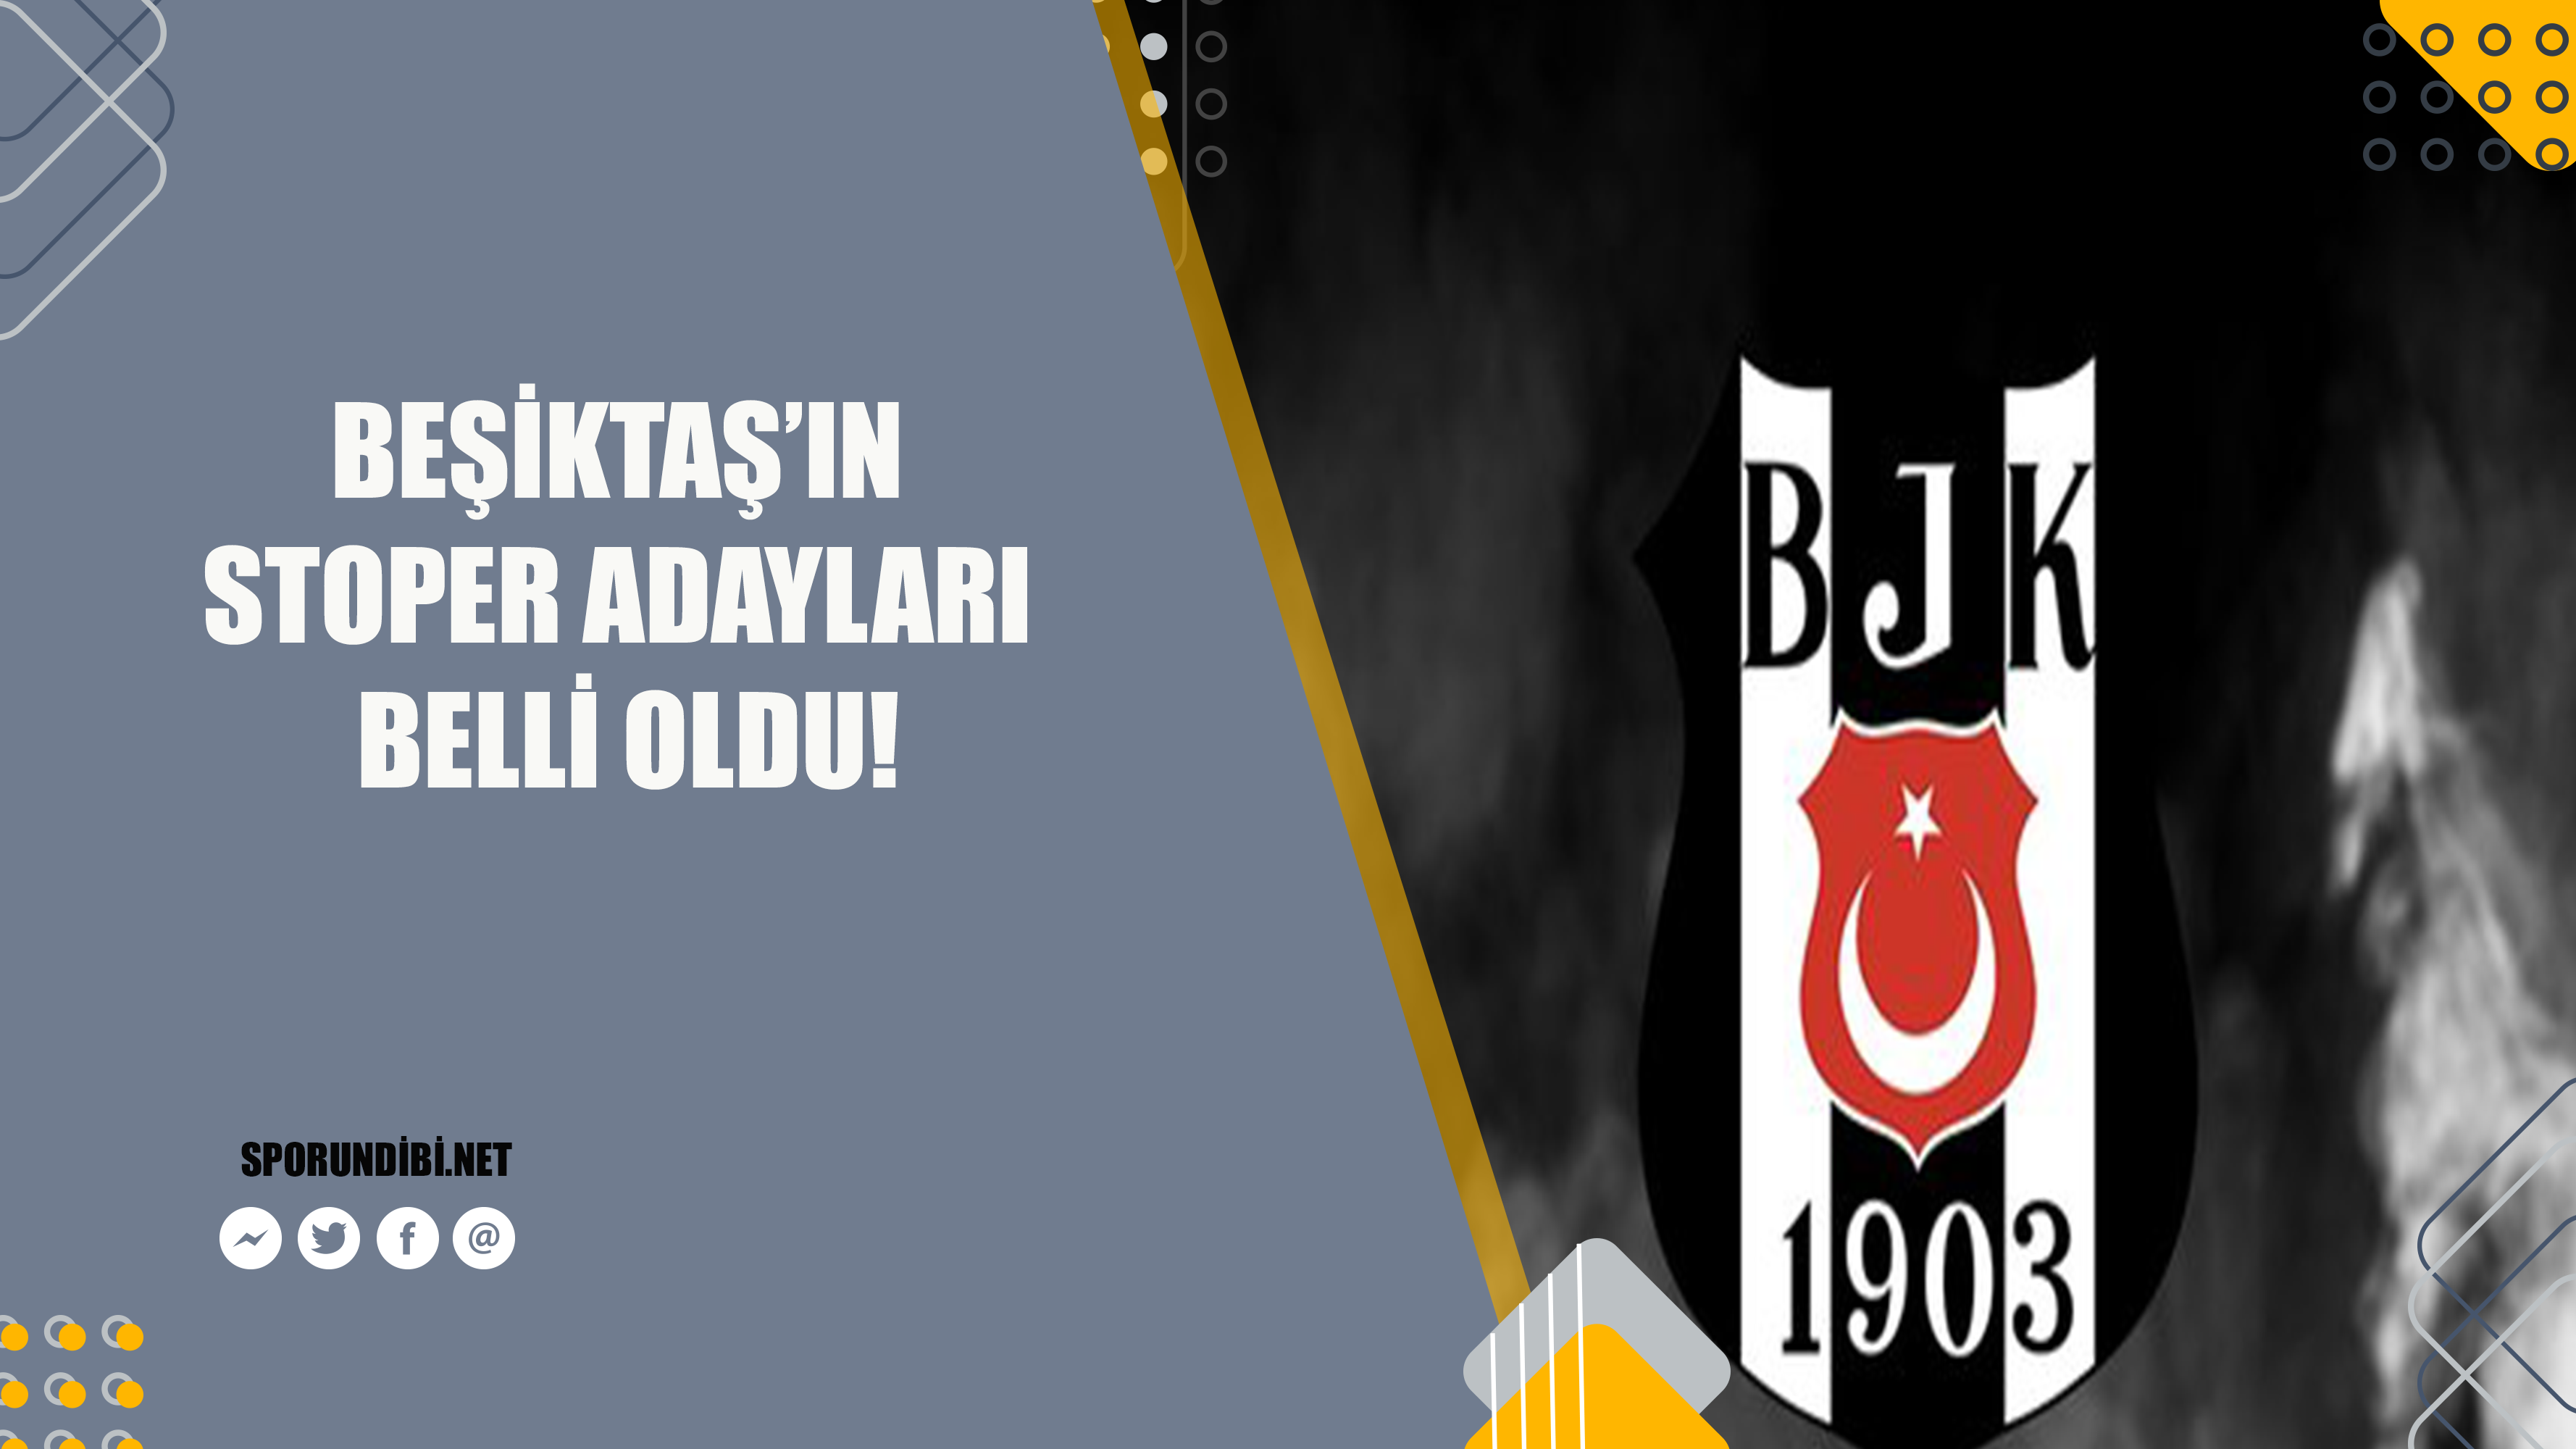 Spor Toto Süper Lig ekiplerinden Beşiktaş kadrosunu güçlendirmek için transfer çalışmalarına devam ederken stoper bölgesine düşünülen isimlerde belli oldu. 
İşte o isimler...